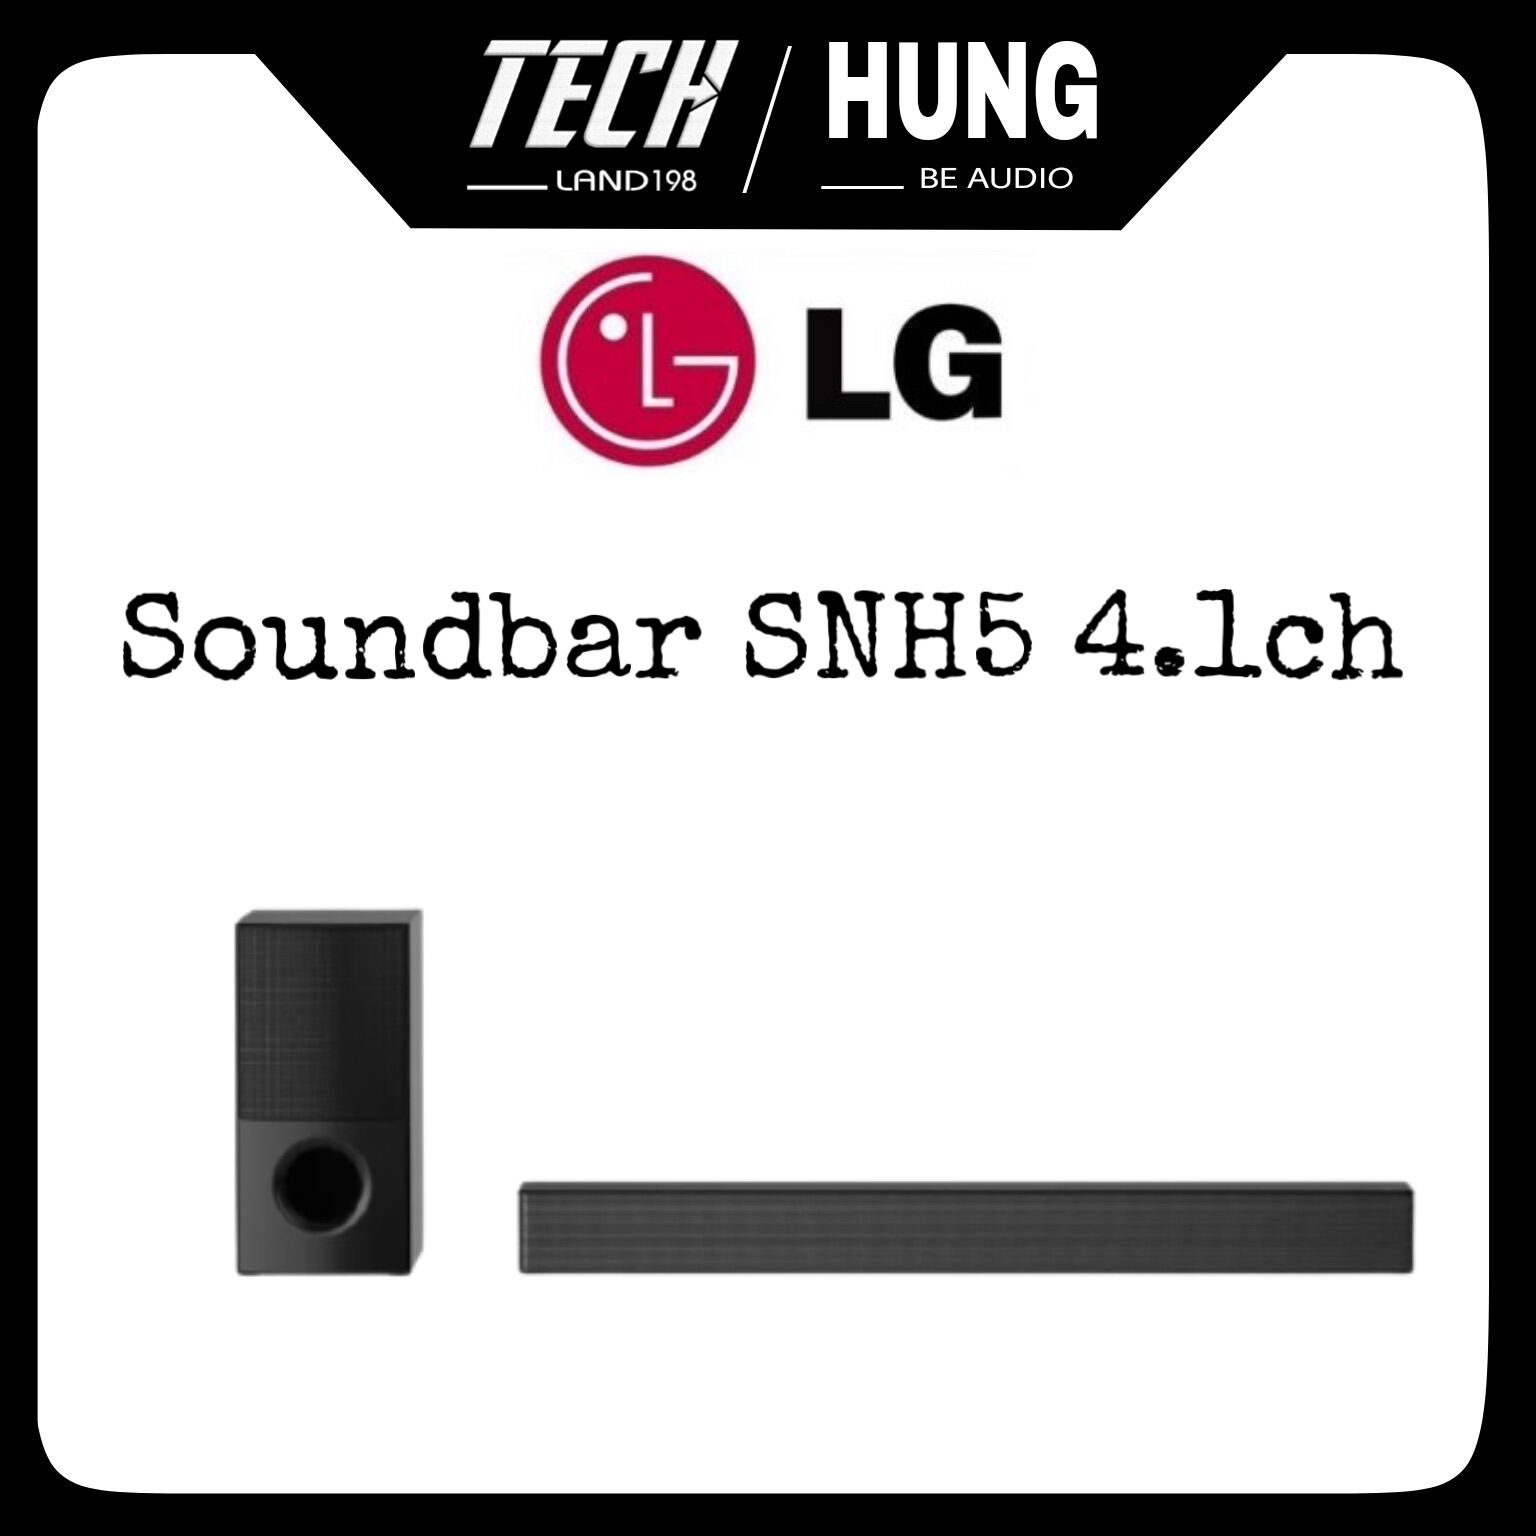 Loa thanh soundbar LG 4.1 SNH5 600W hàng chính hãng cao cấp